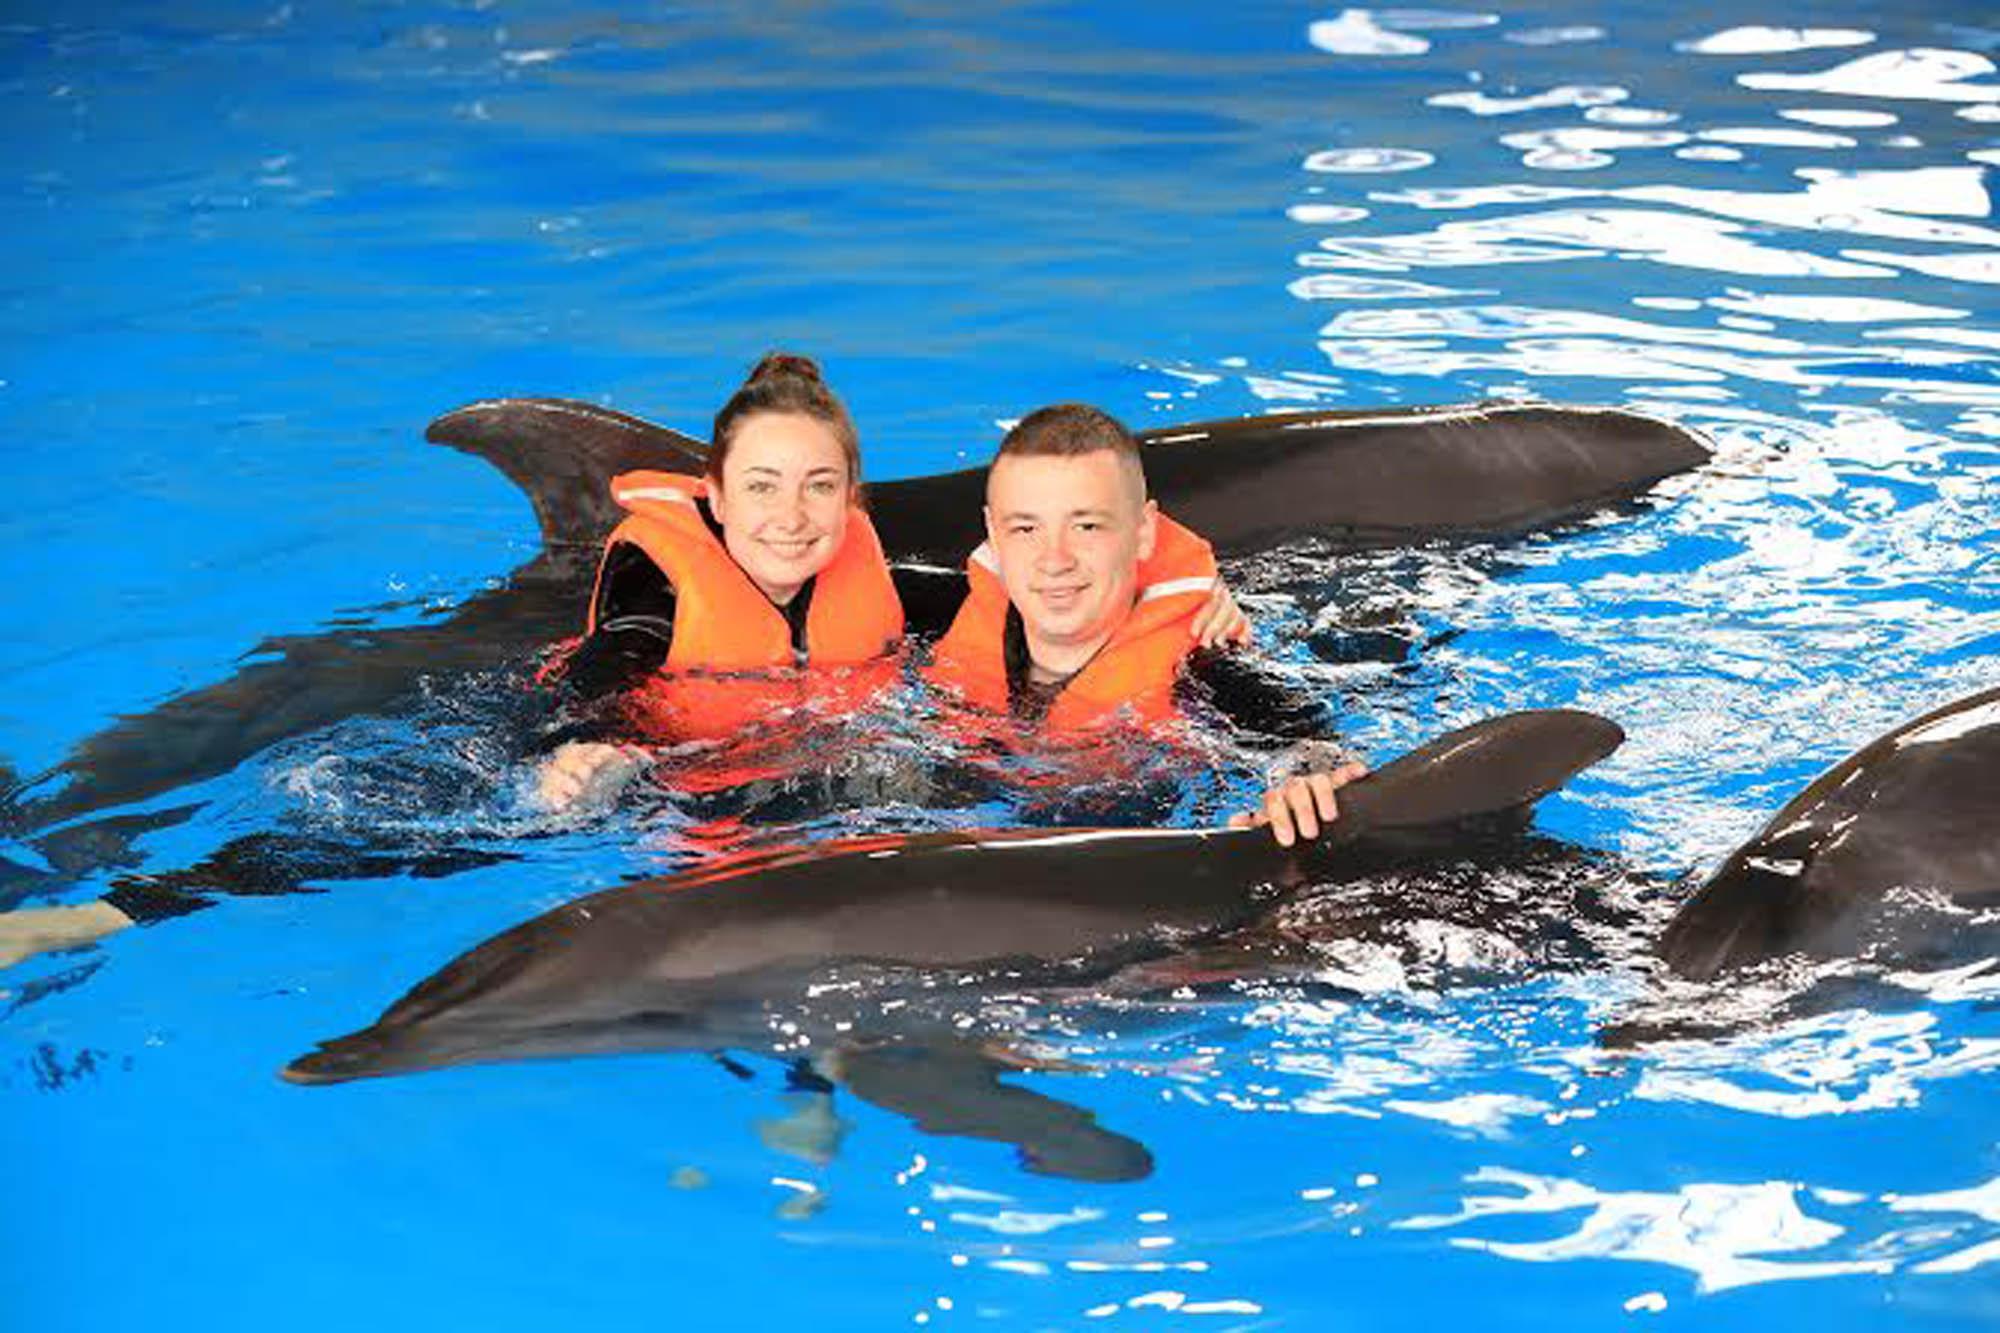 Москвариум поплавать. Москвариум дельфины. Москвариум центр плавания с дельфинами. Купание с дельфинами. Плавание с дельфинами в Москвариуме.